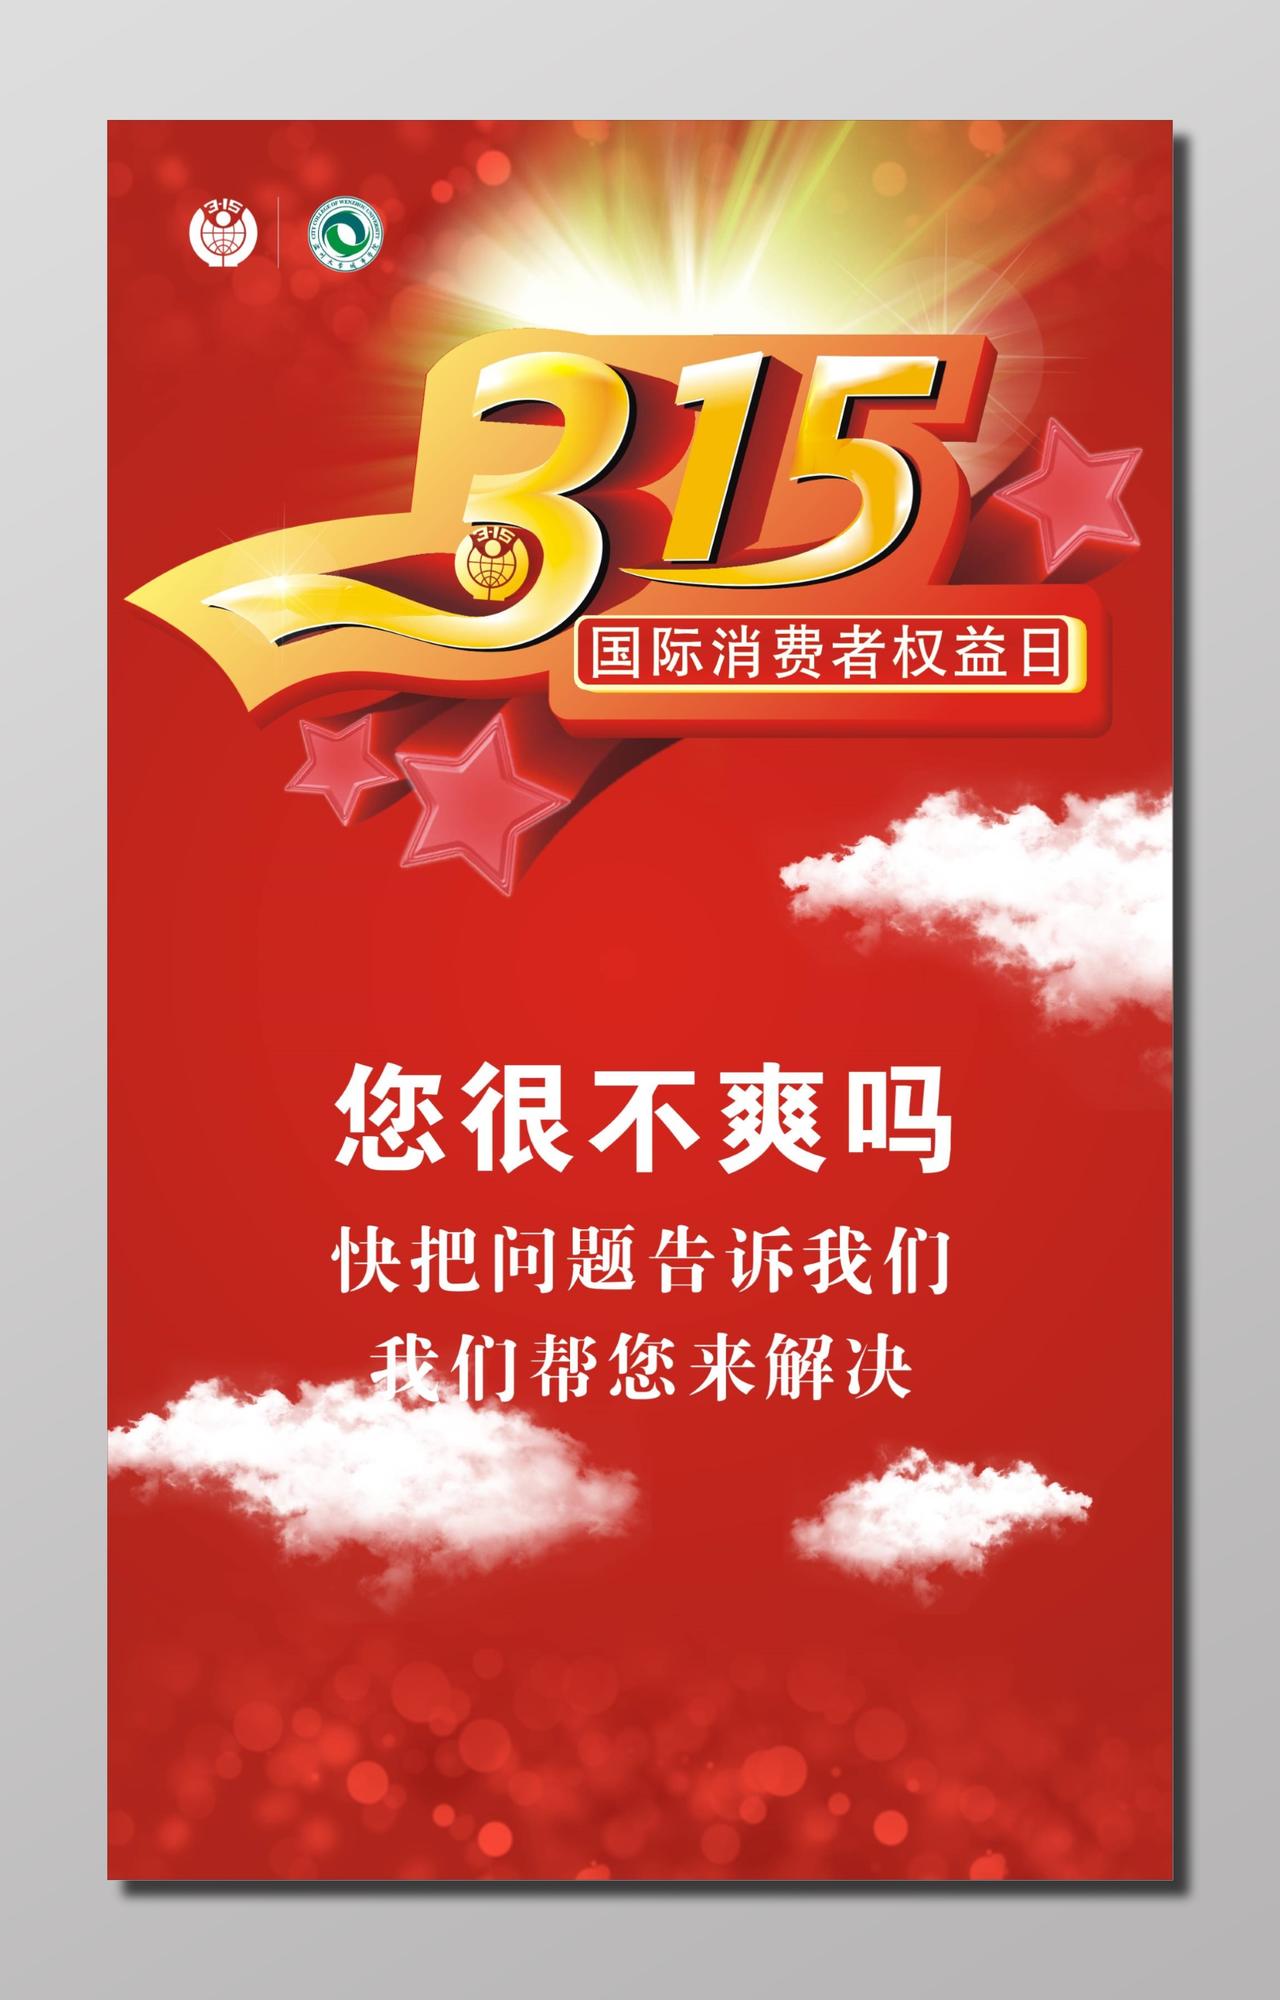 315国际消费者权益日红色宣传海报